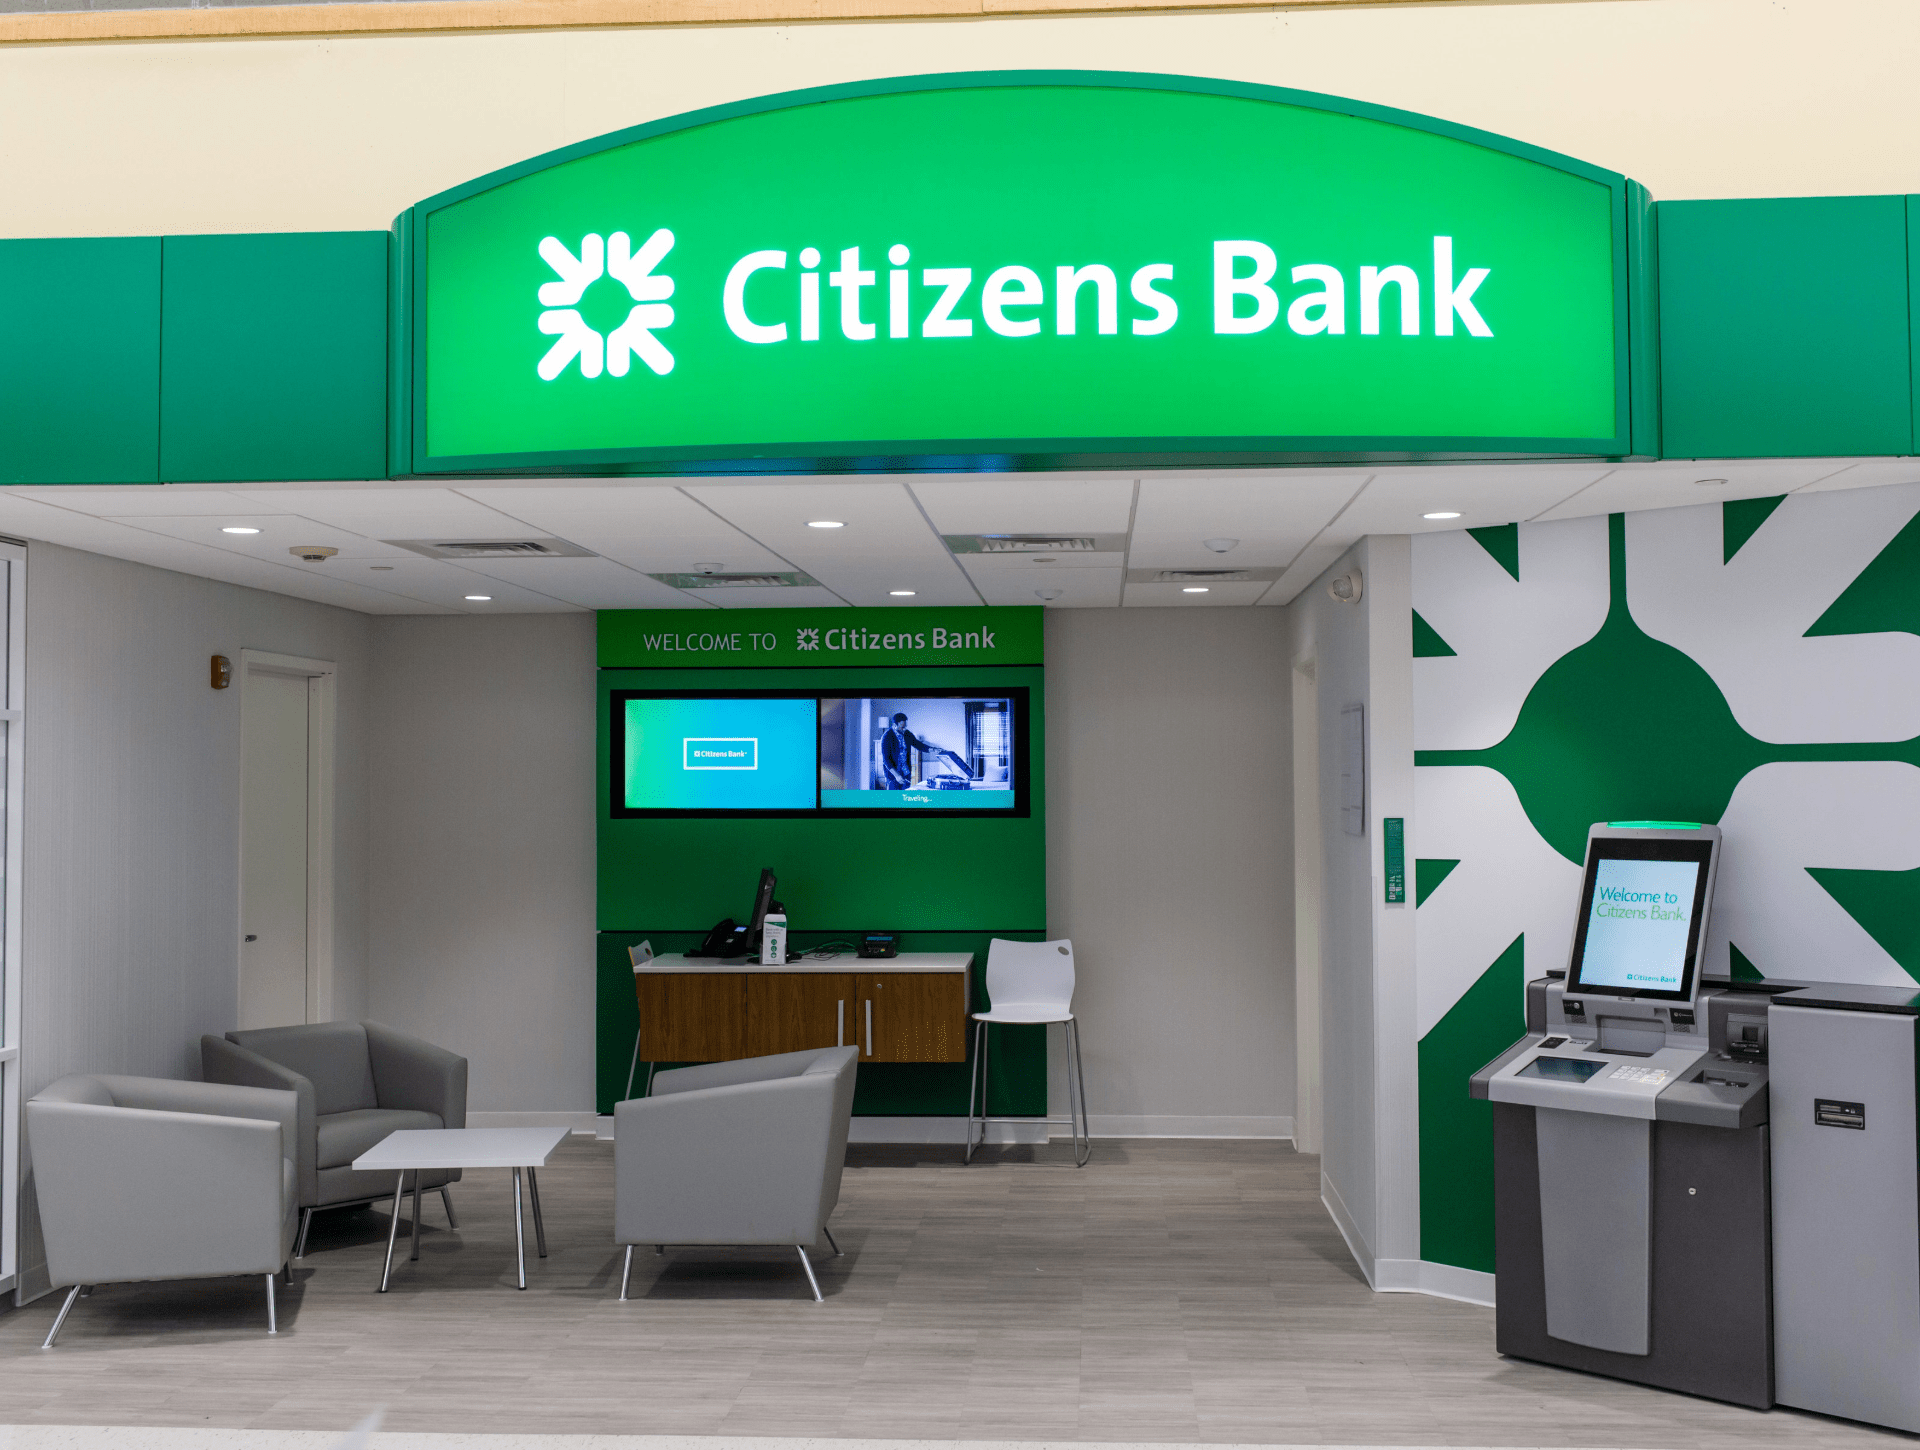 Bank Digital Signage for Interior